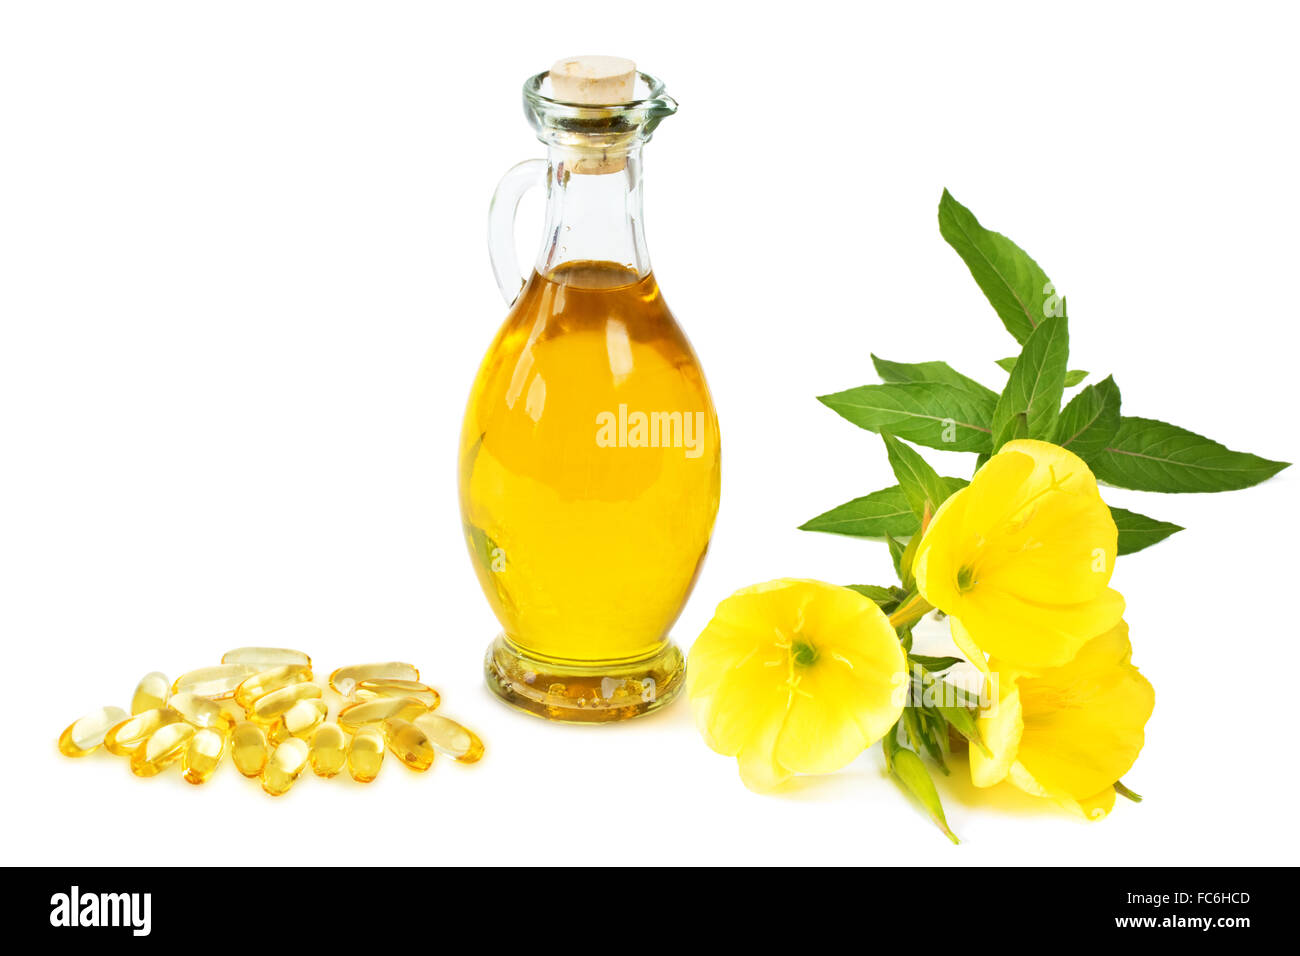 Evening primrose oil capsules Stock Photo